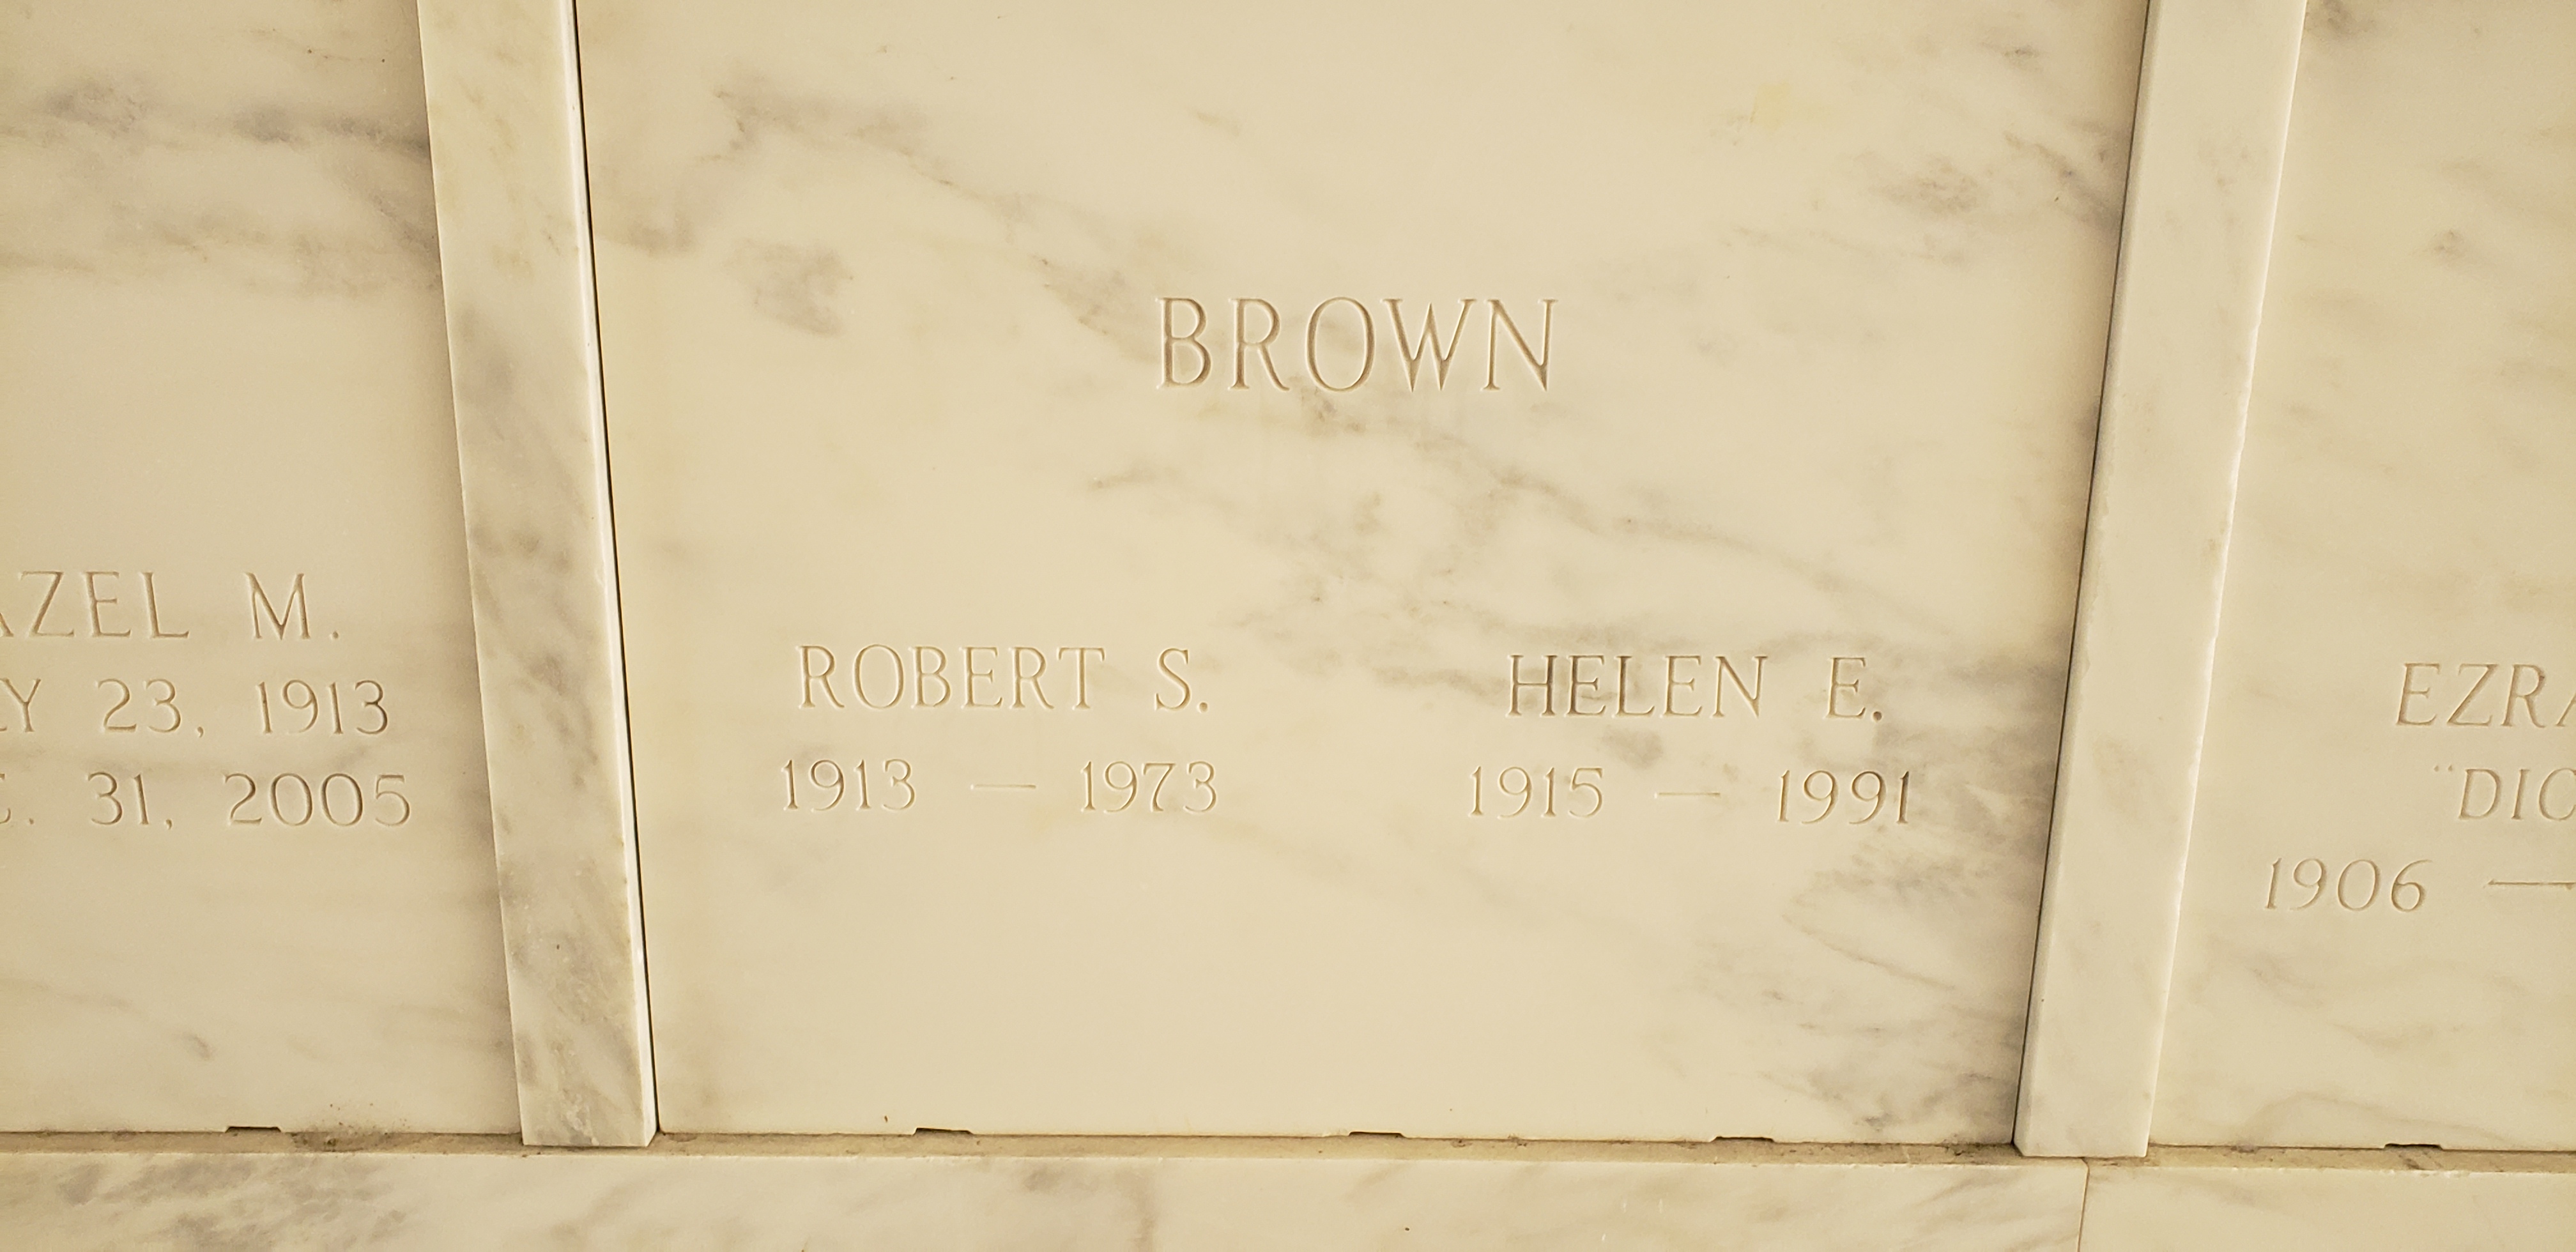 Robert S Brown